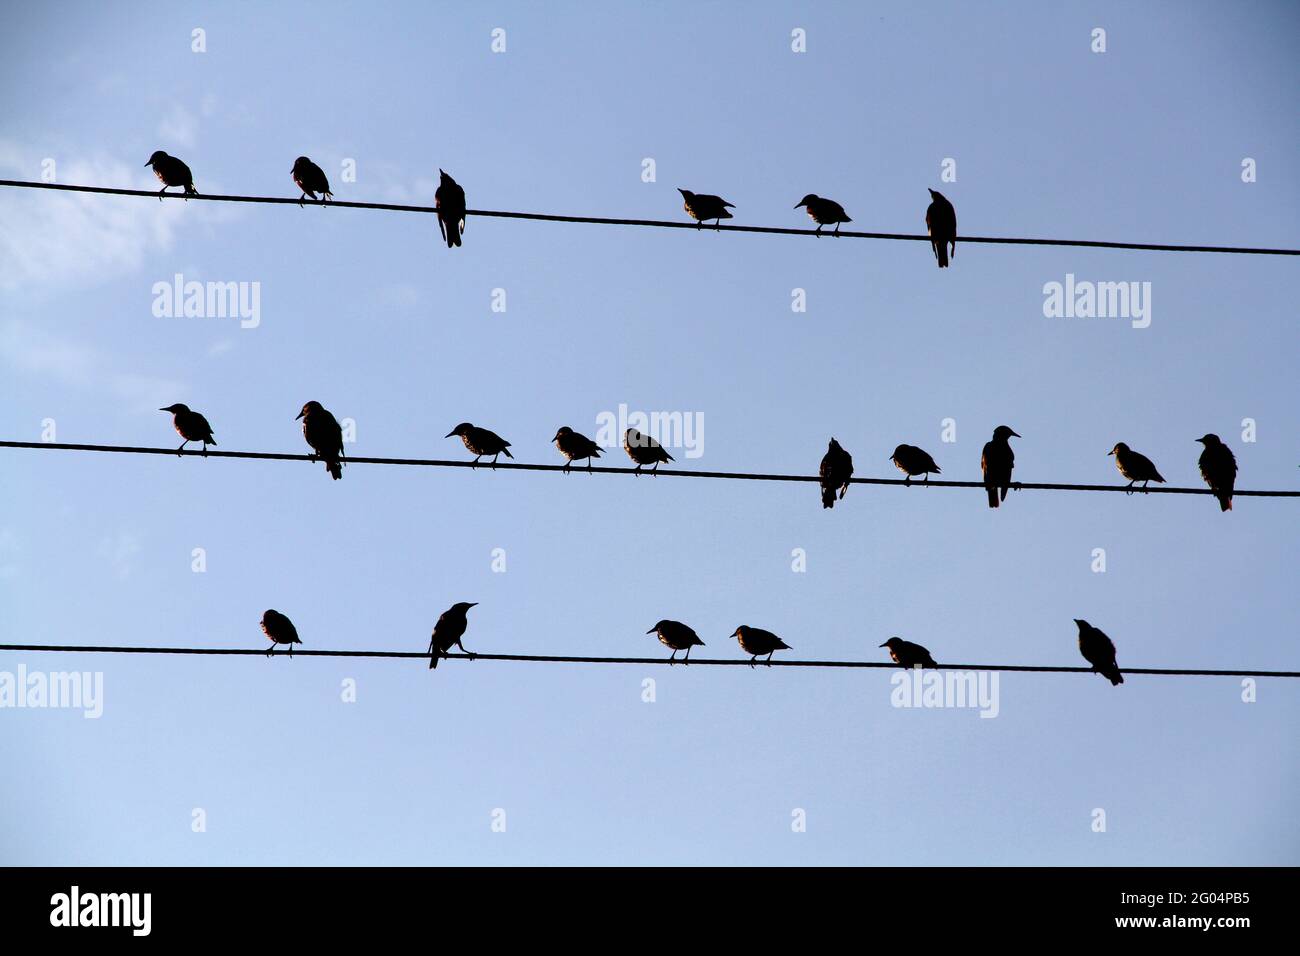 Un troupeau d'oiseaux noirs assis sur des fils semblables à des notes musicales contre un ciel bleu sans nuages. Banque D'Images